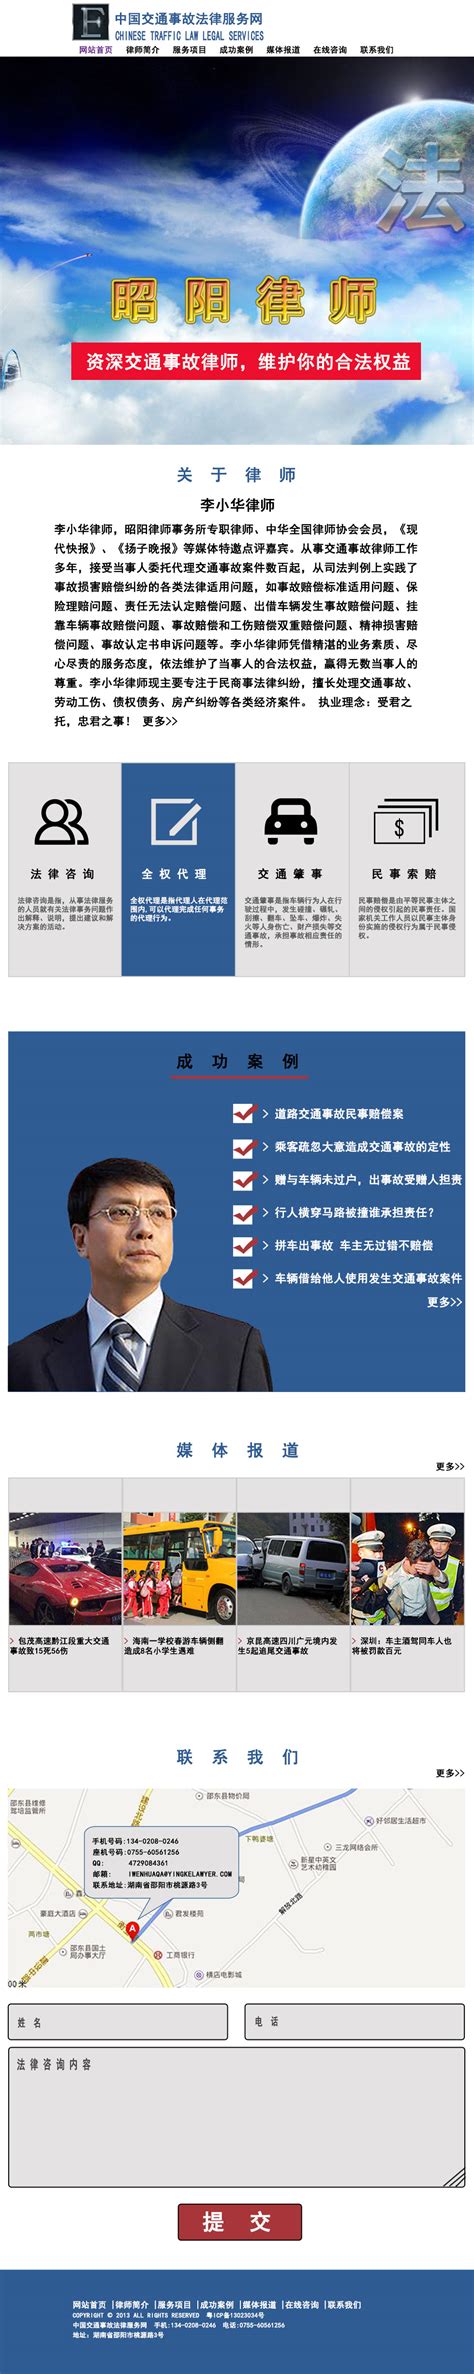 律师网页模板_素材中国sccnn.com